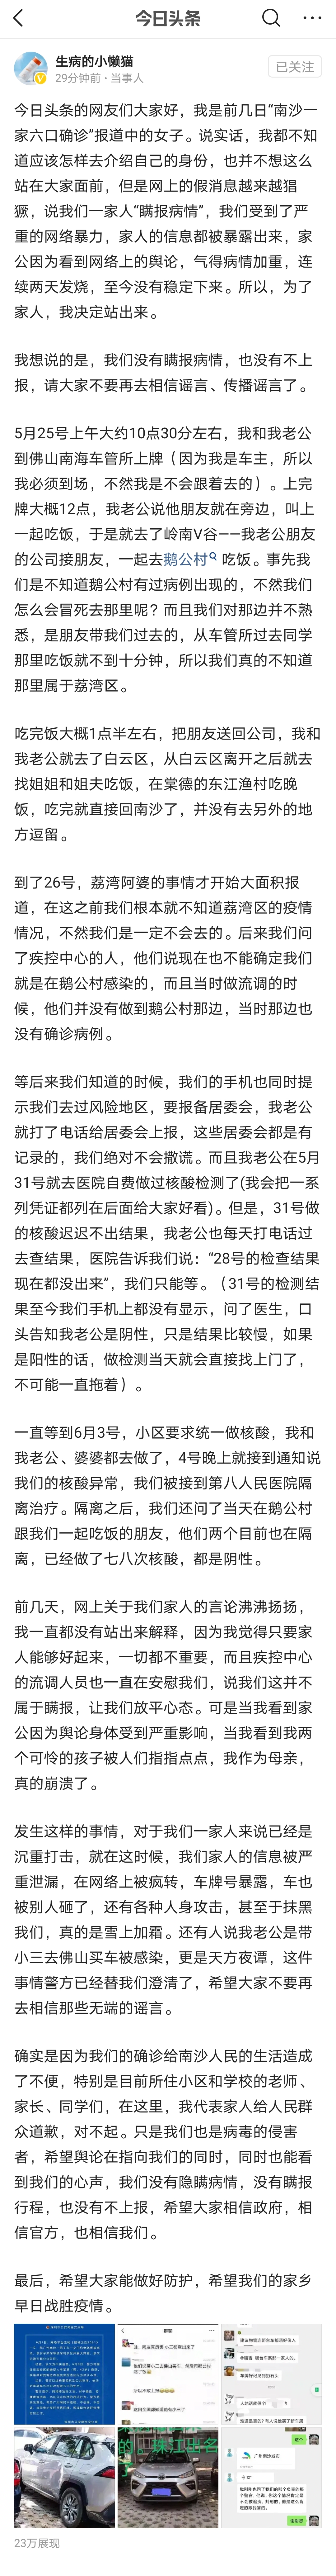 广州一夫妇隐瞒行程被立案调查-疾控最新研判来了